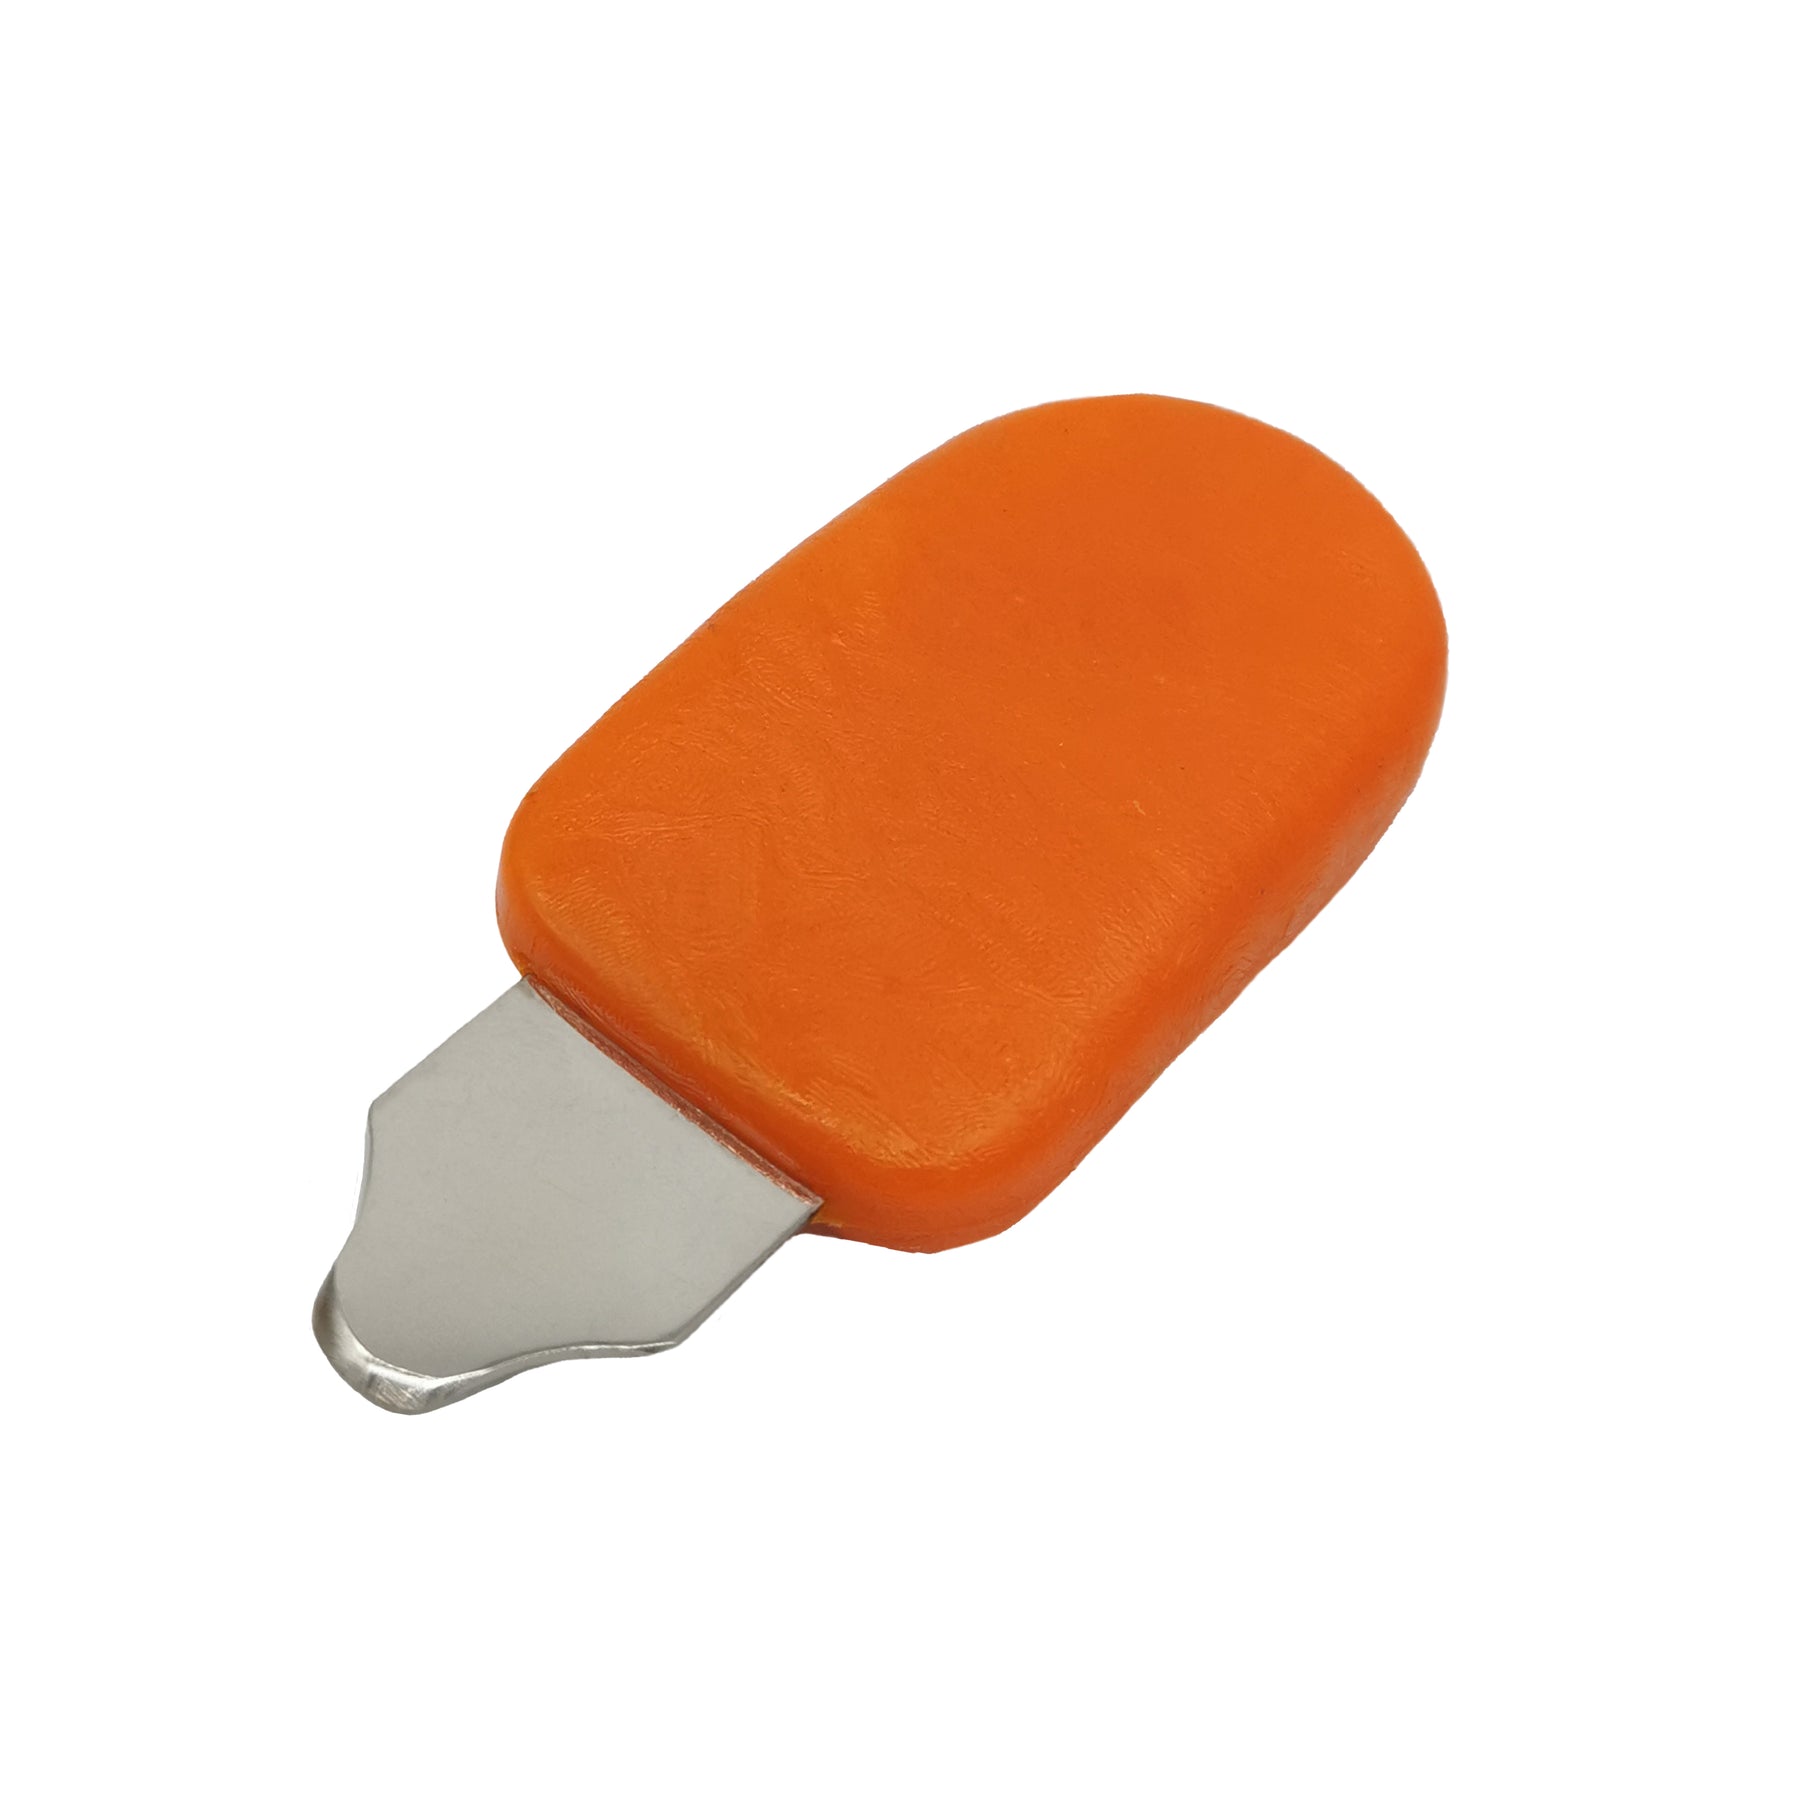 <transcy>Watch Knife Lever Case Opener | Handheld Battery Replacement Tool Orange</transcy>